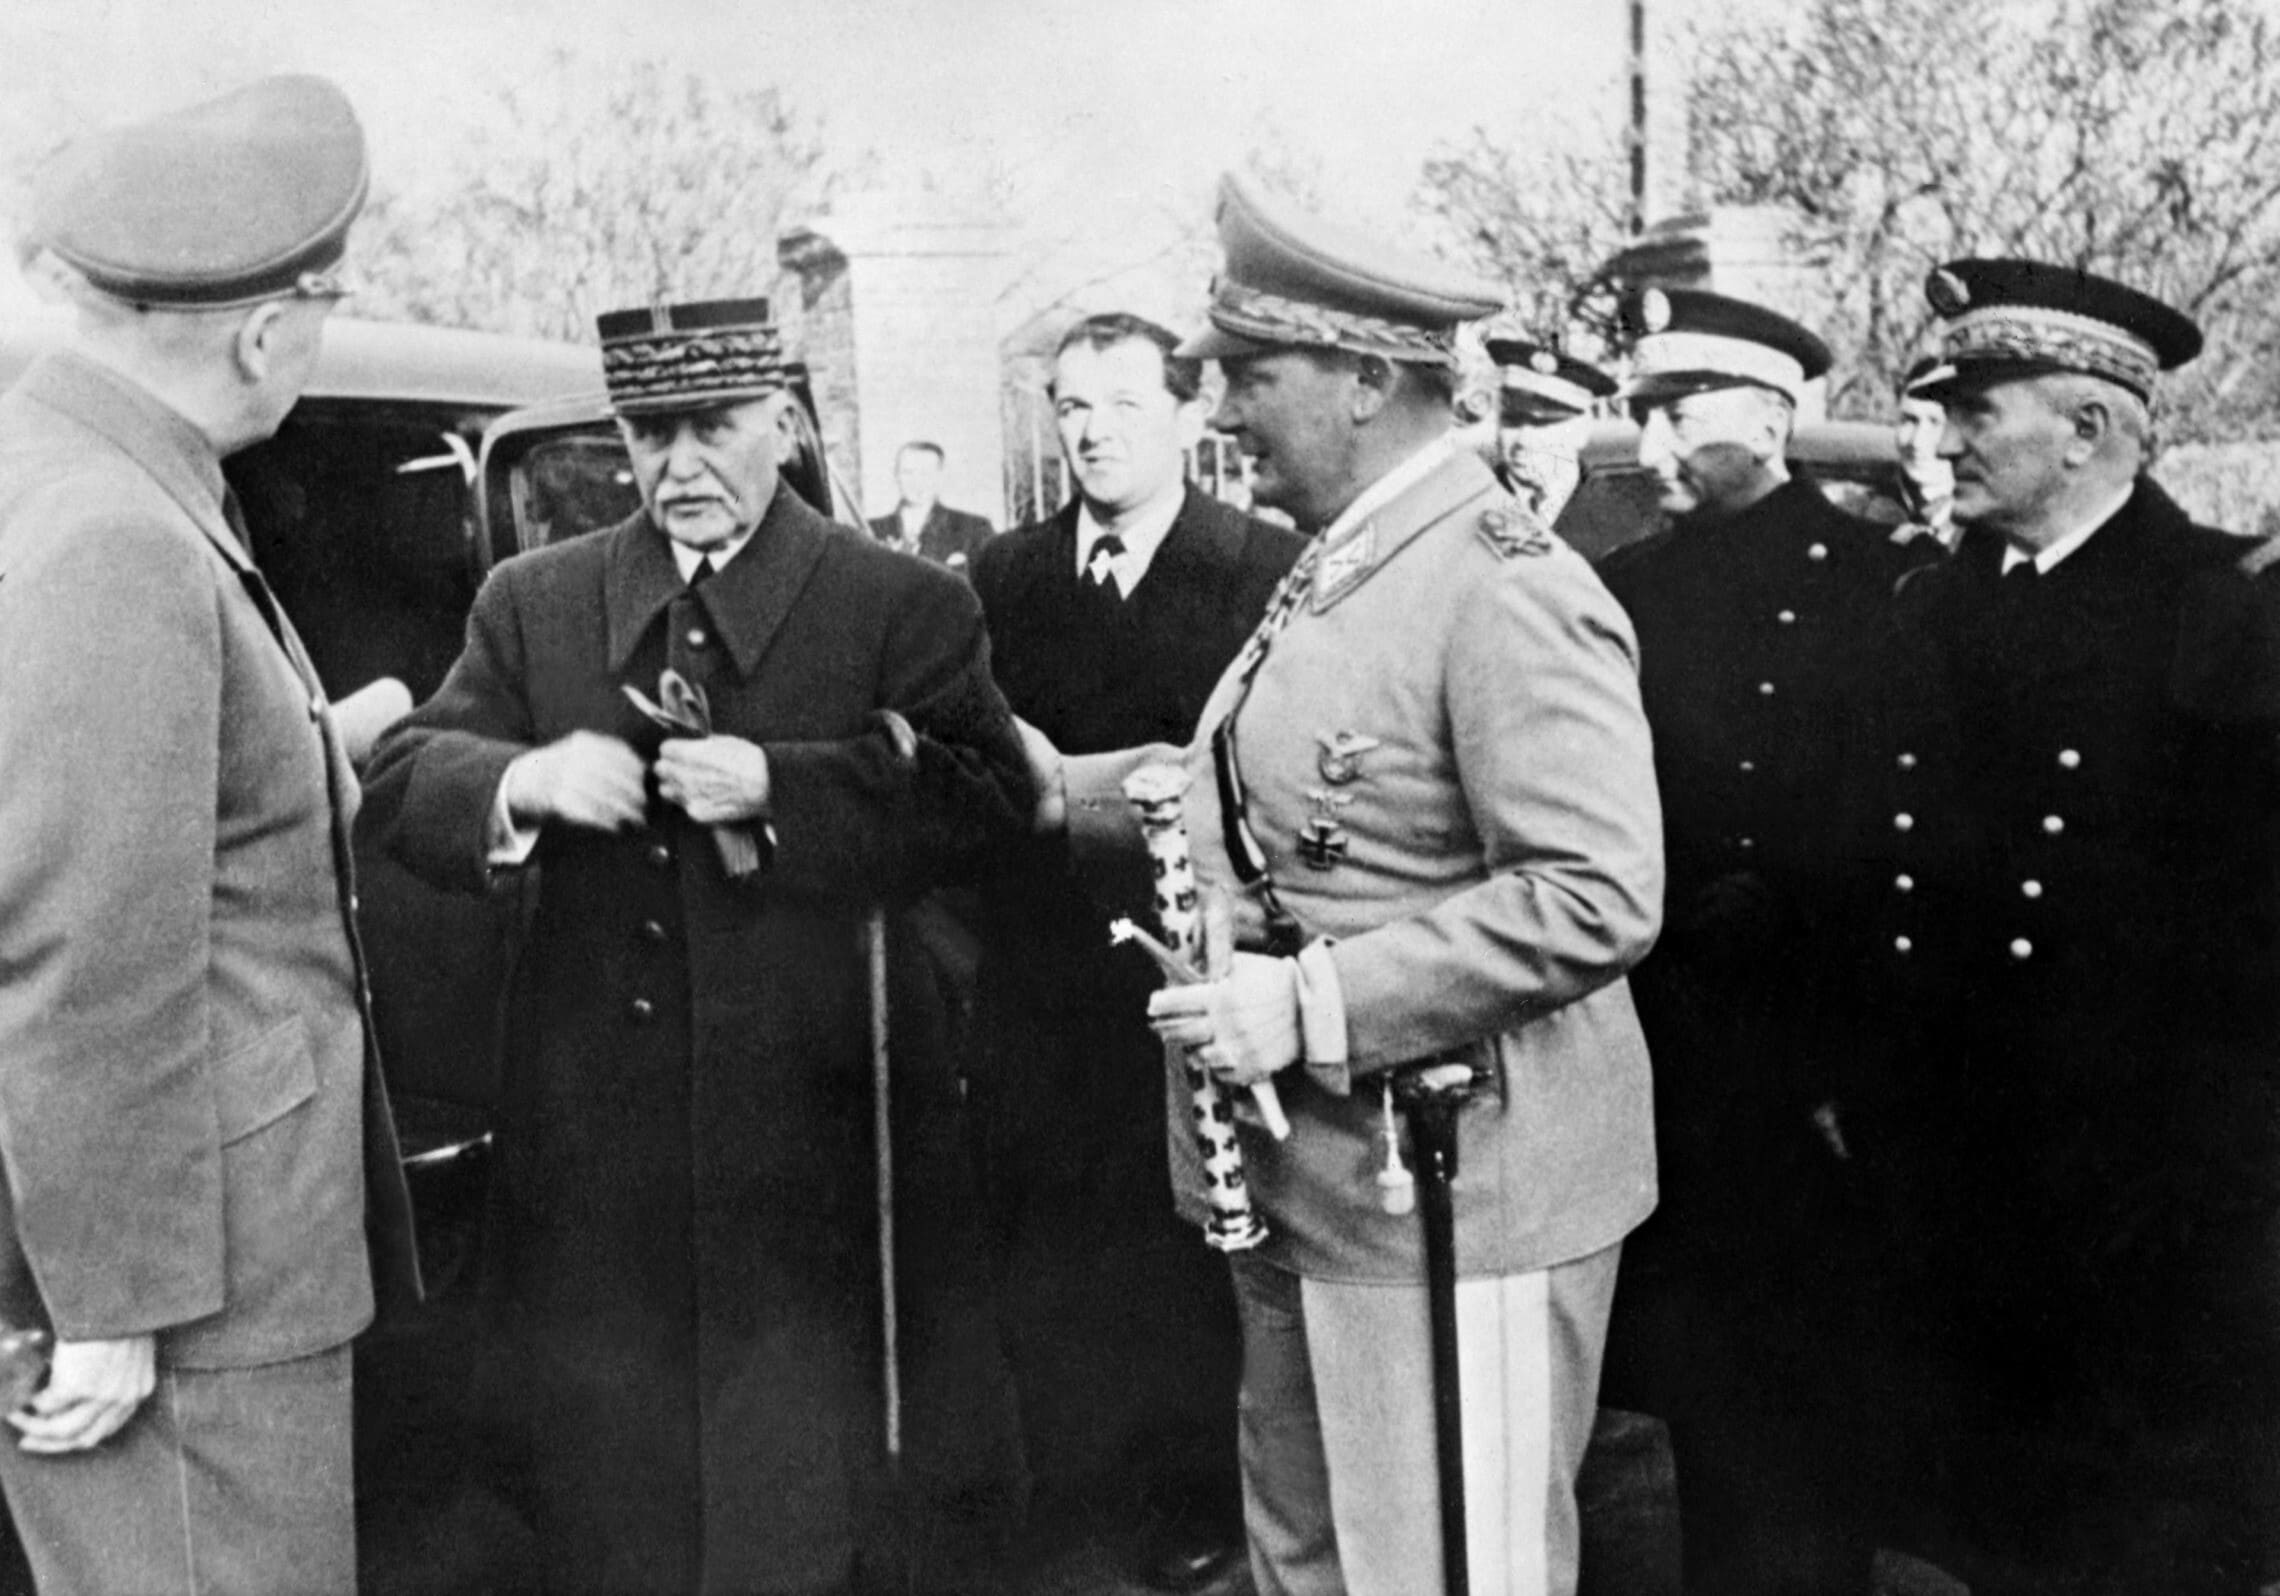 מרשל פיליפ פטן נפגש עם הבכיר הנאצי הרמן גרינג, 1 בדצמבר 1941 (צילום: AFP)